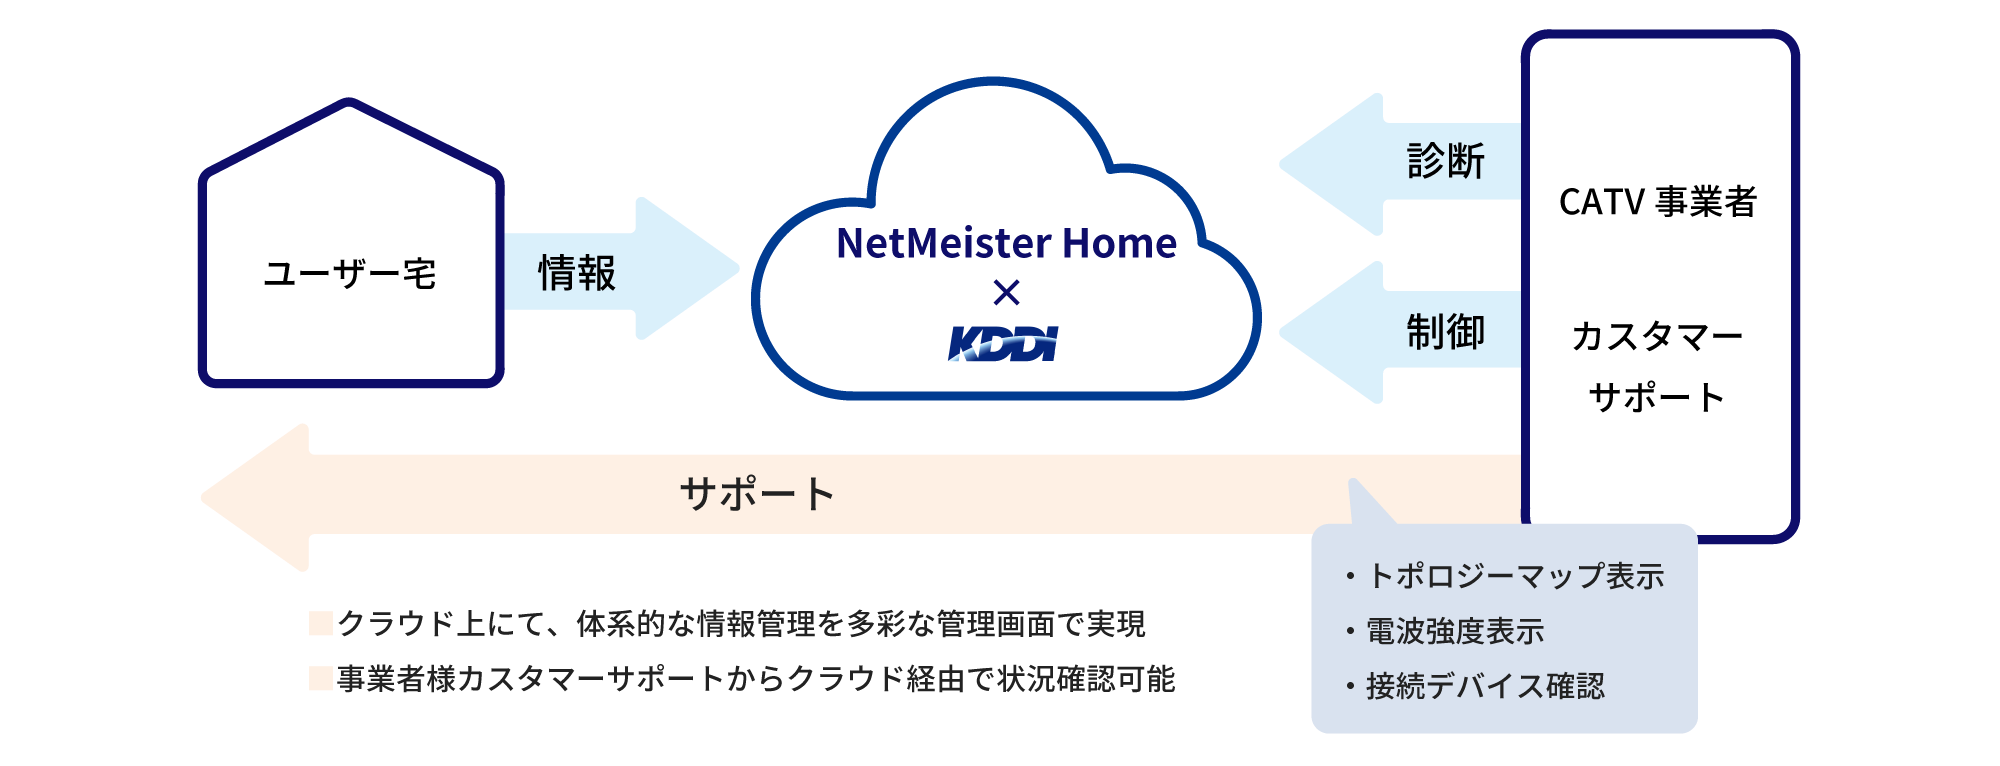 図3 :「ケーブルテレビ事業者向け家庭用Mesh Wi-Fiのレンタルサービス」の仕組み